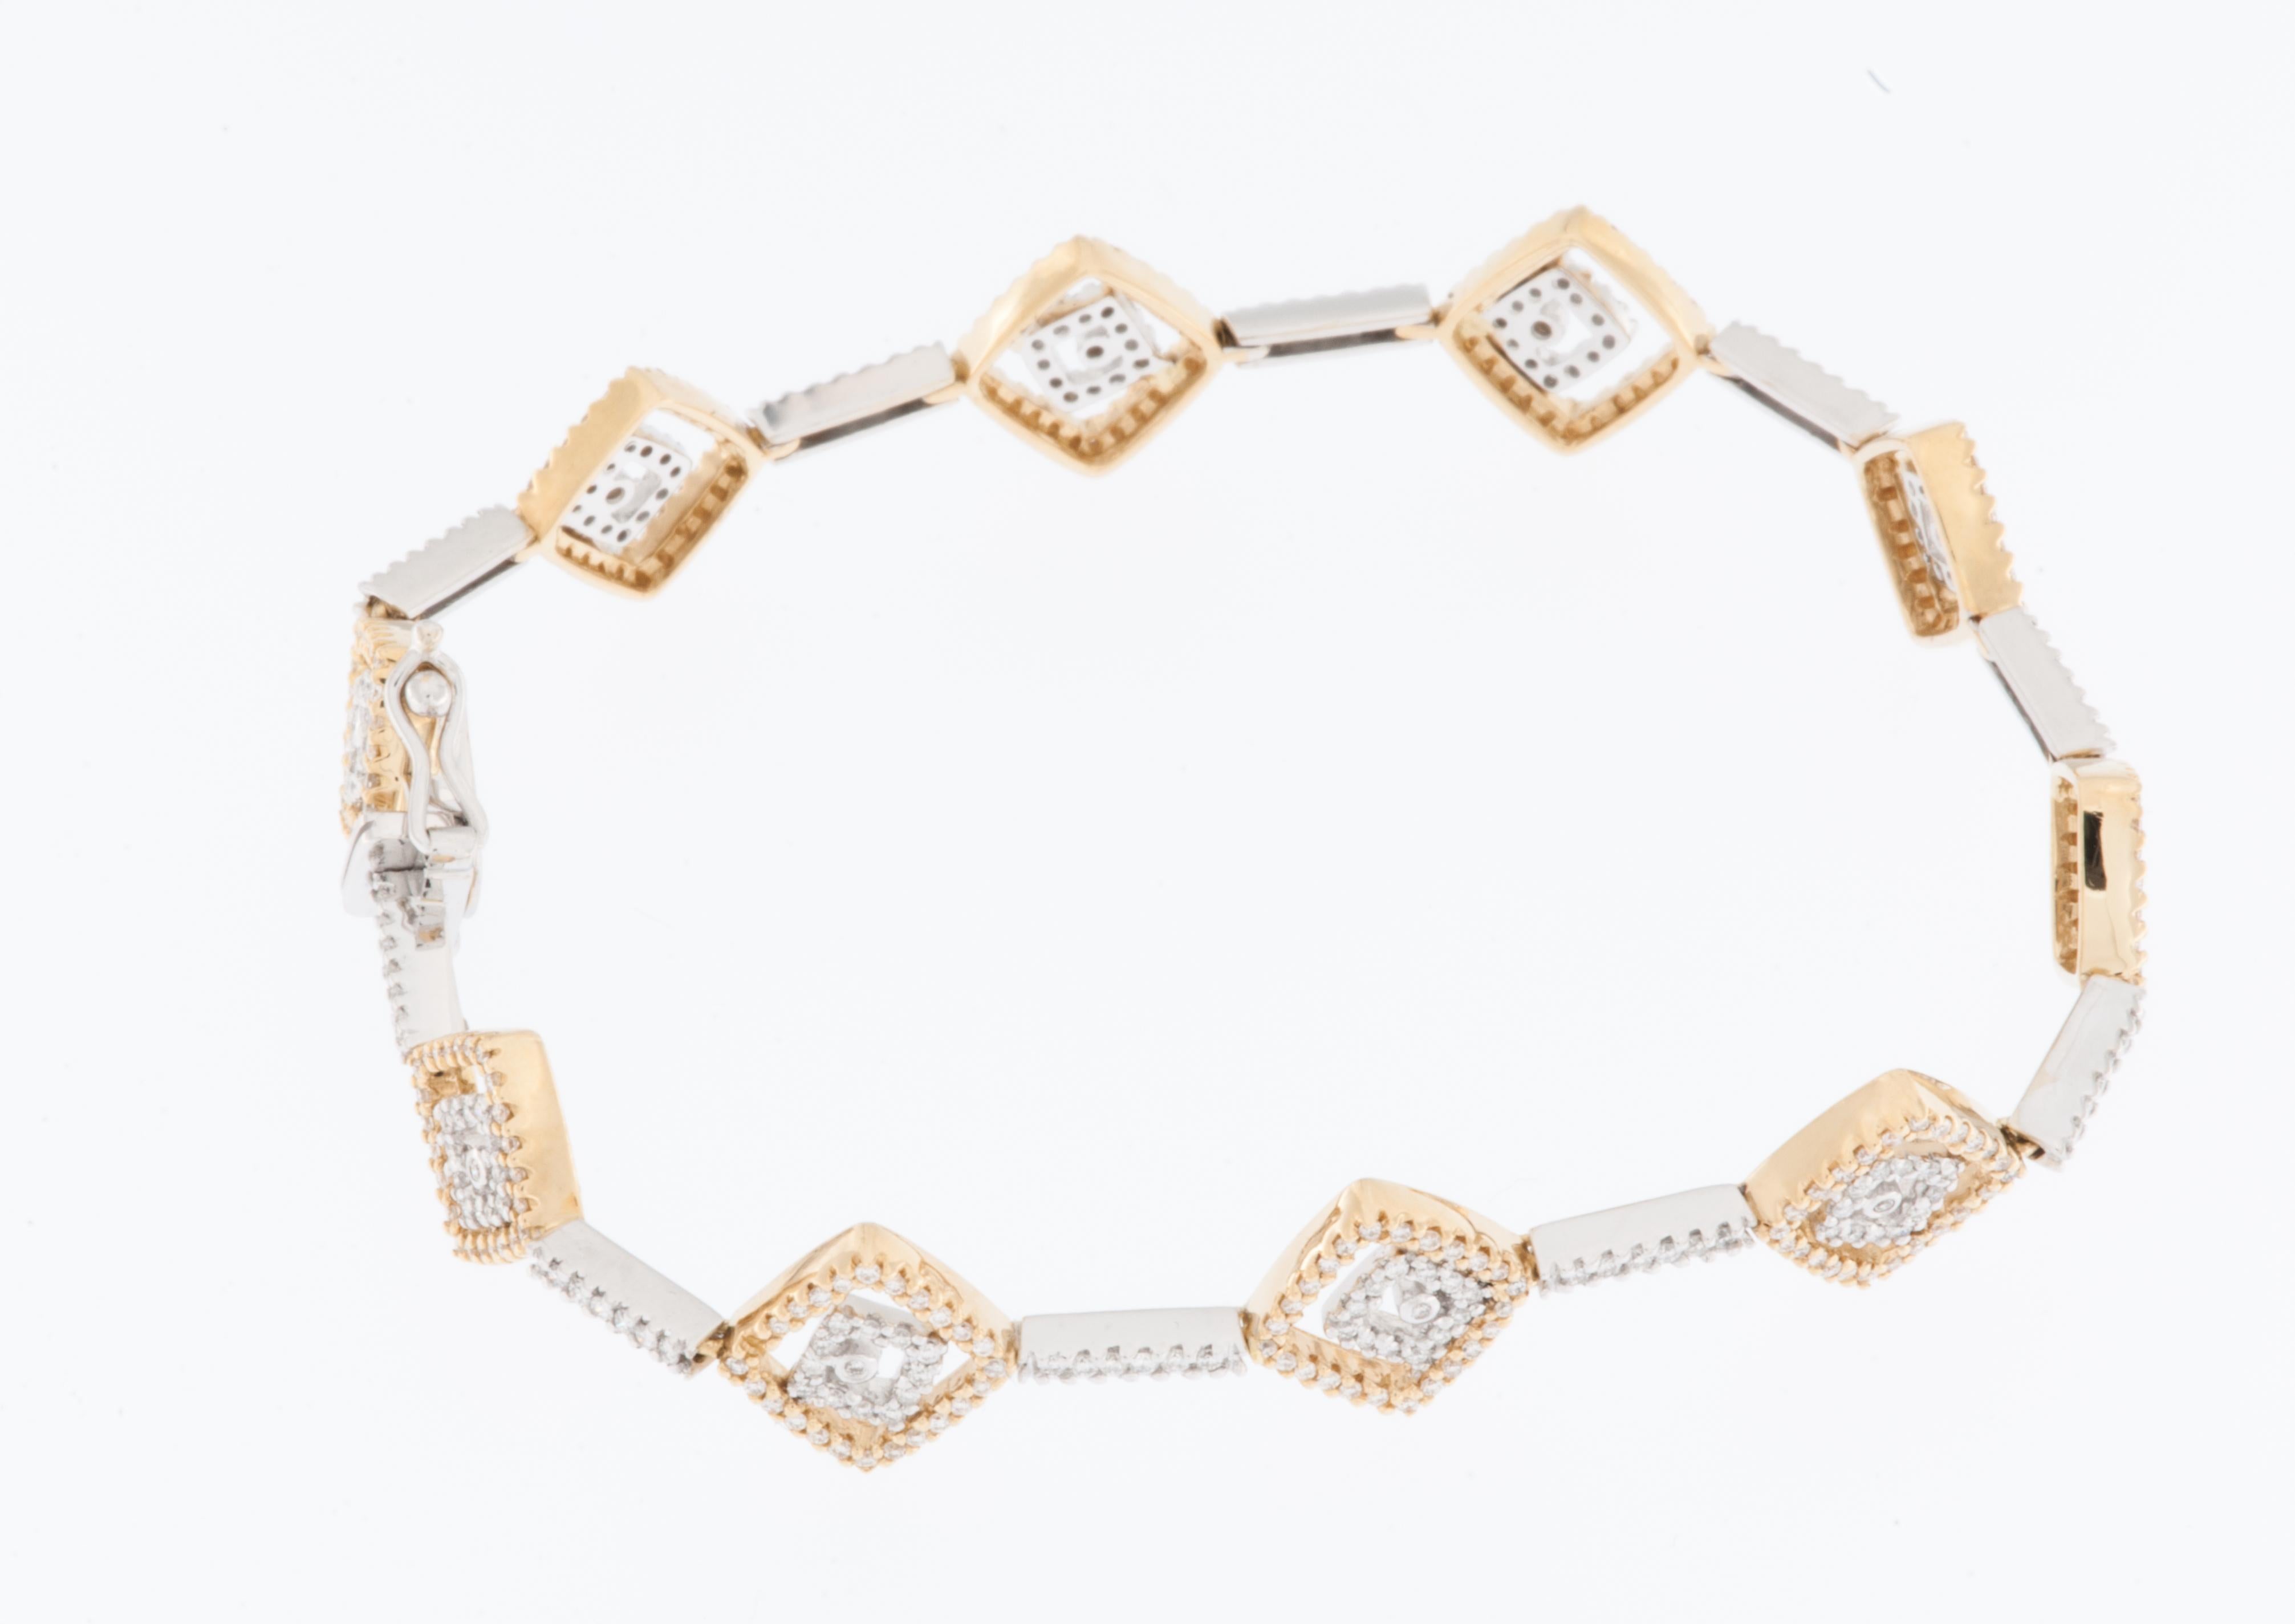 Das 430 Diamonds Square Motif Armband aus 18-karätigem Gelb- und Weißgold ist ein bemerkenswertes und opulentes Schmuckstück, das aufwändiges Design mit luxuriösen Materialien verbindet. Dieses Armband hat ein quadratisches Motiv, das mit 430